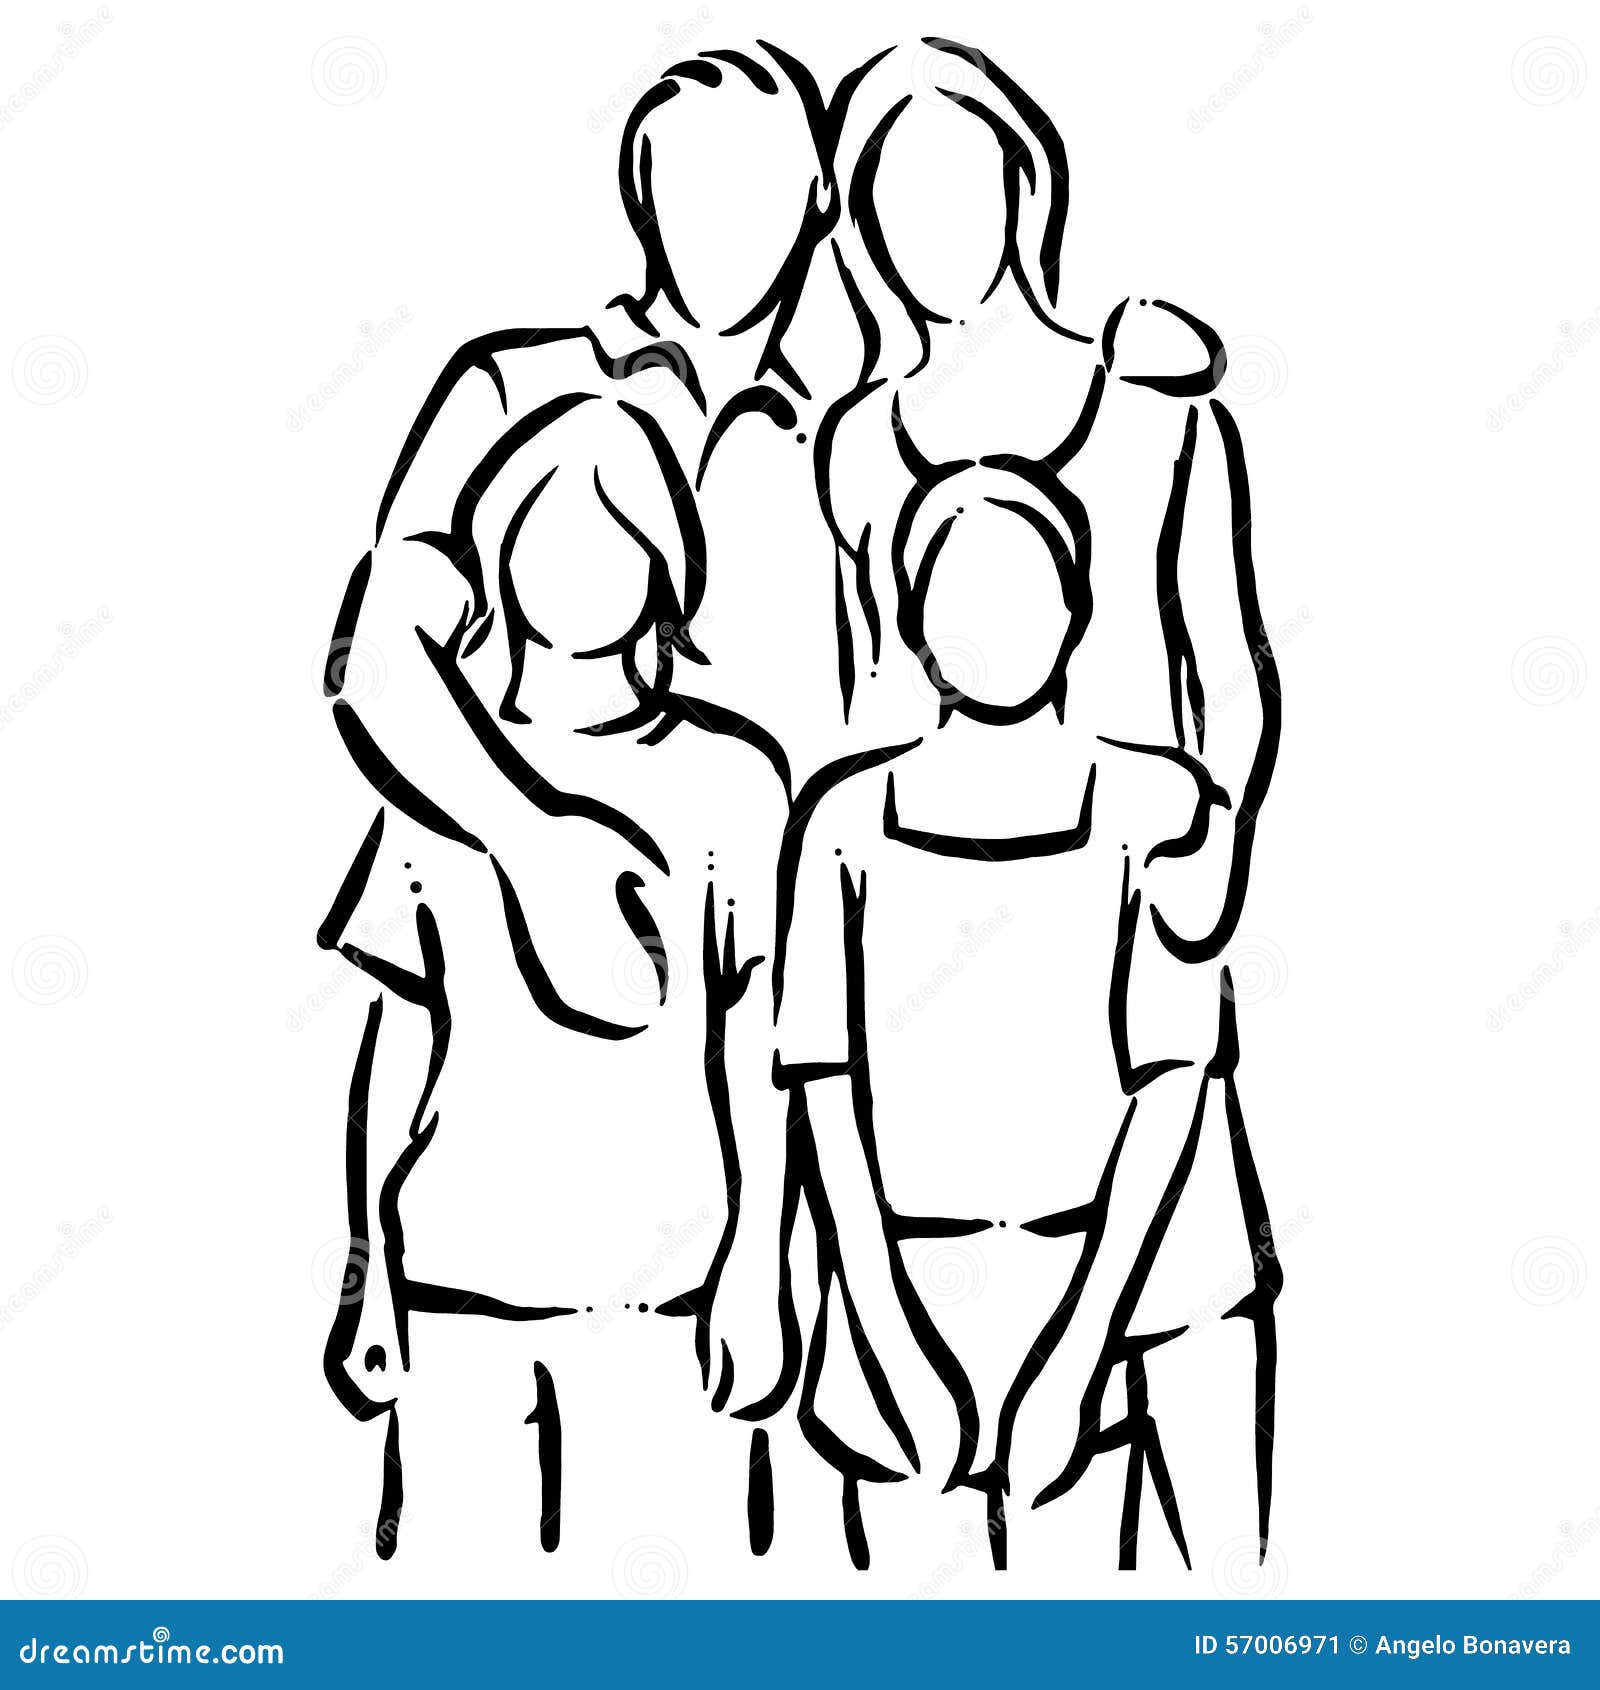 Eine Familie, die zusammen stehen oder ein junges Paar mit Kindern